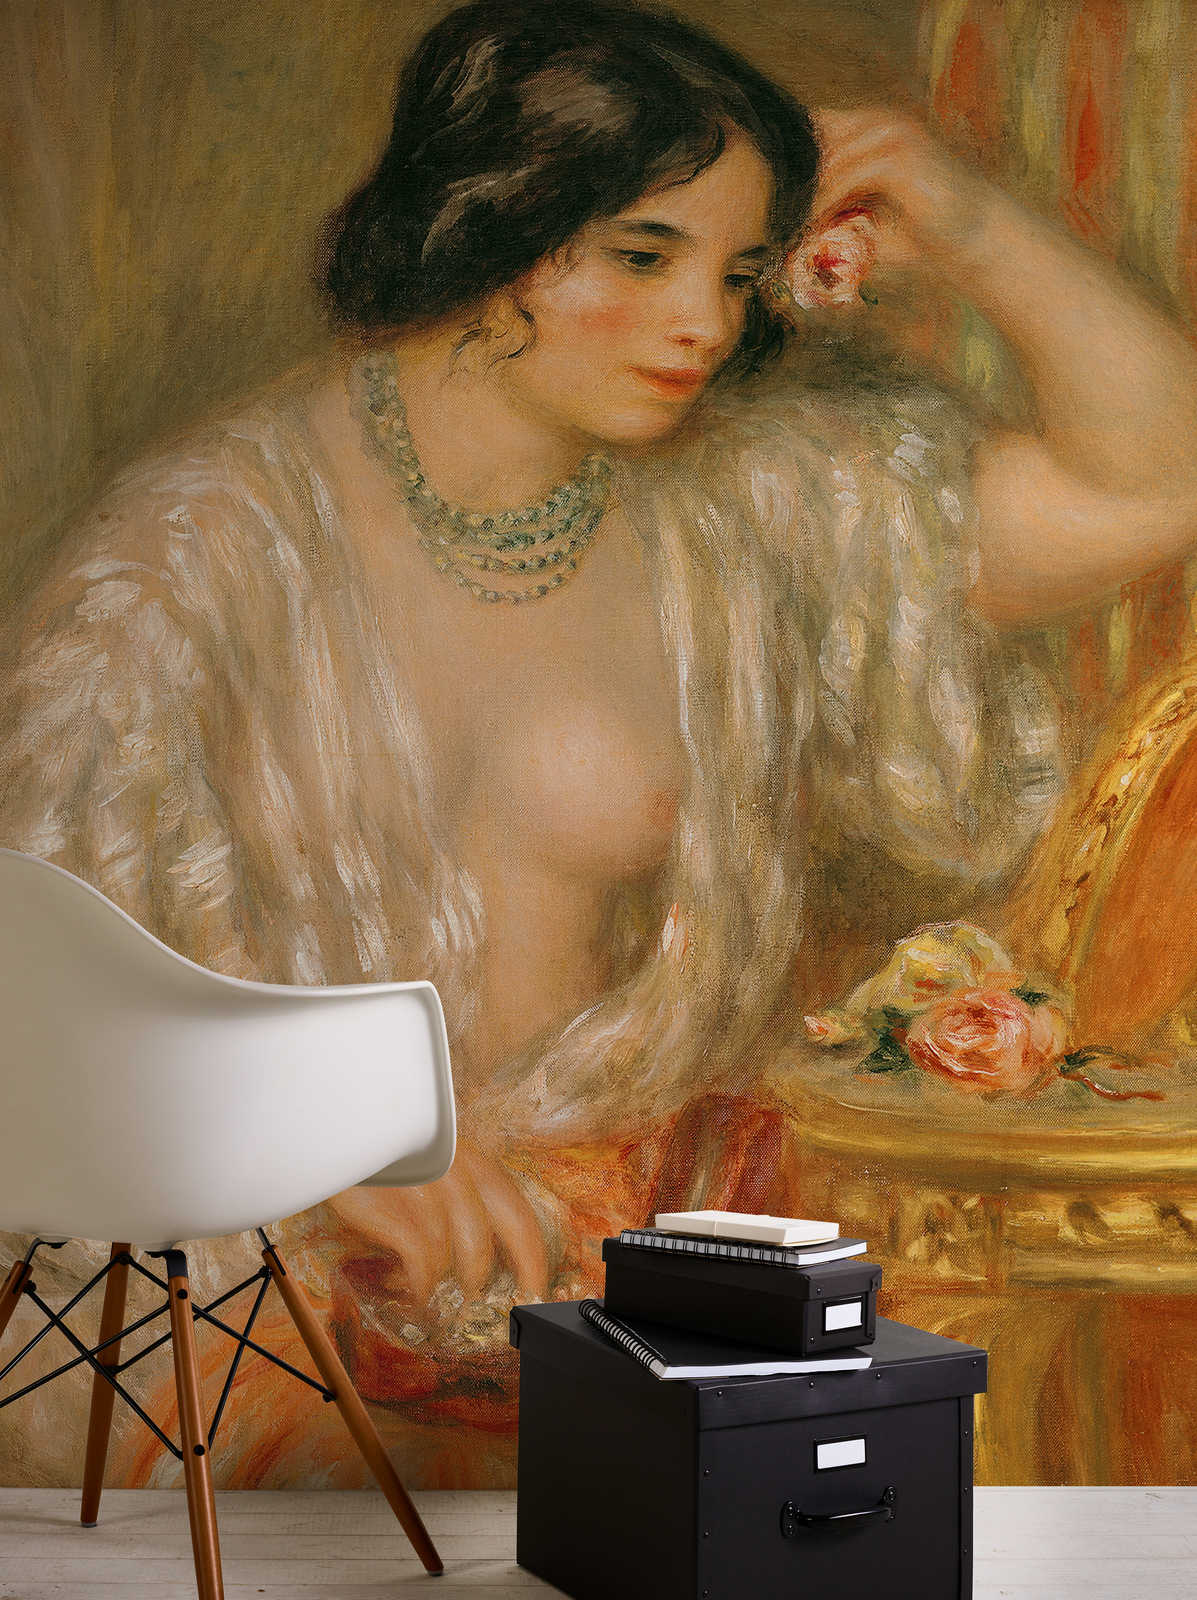             Muurschildering "Gabrielle met juwelendoosje" van Pierre Auguste Renoir
        